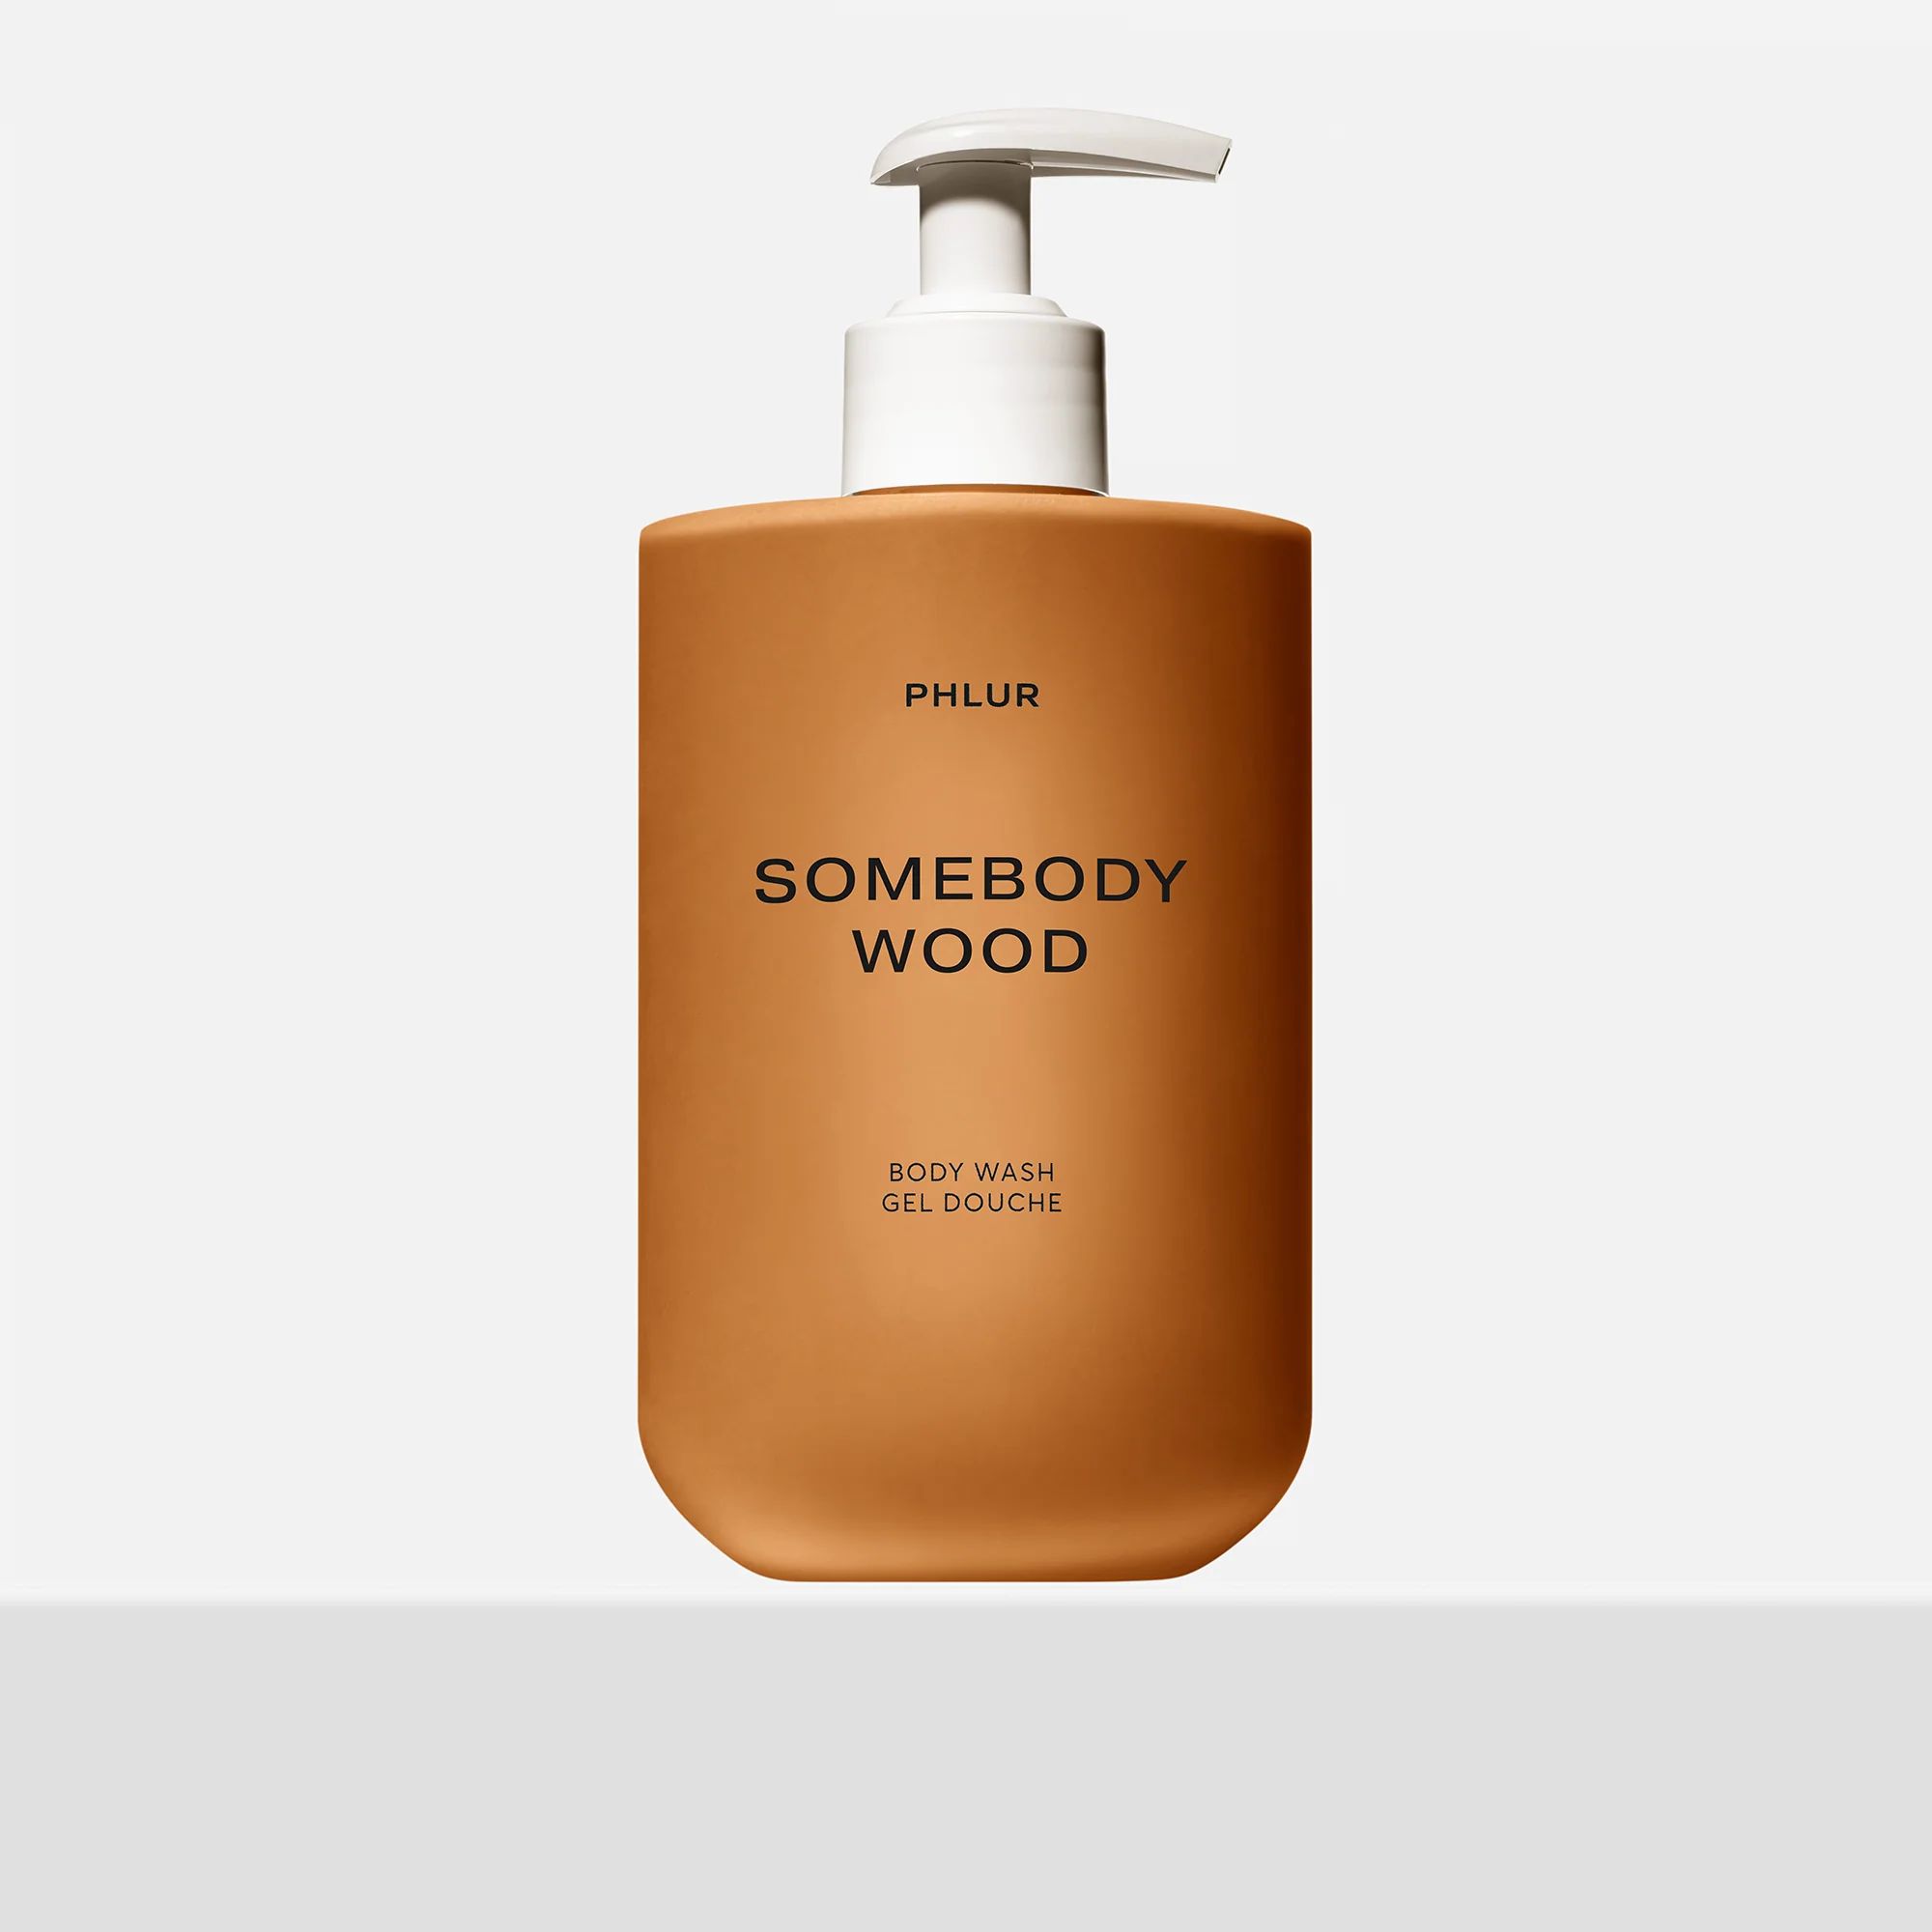 Somebody Wood Body Wash - Phlur | PHLUR